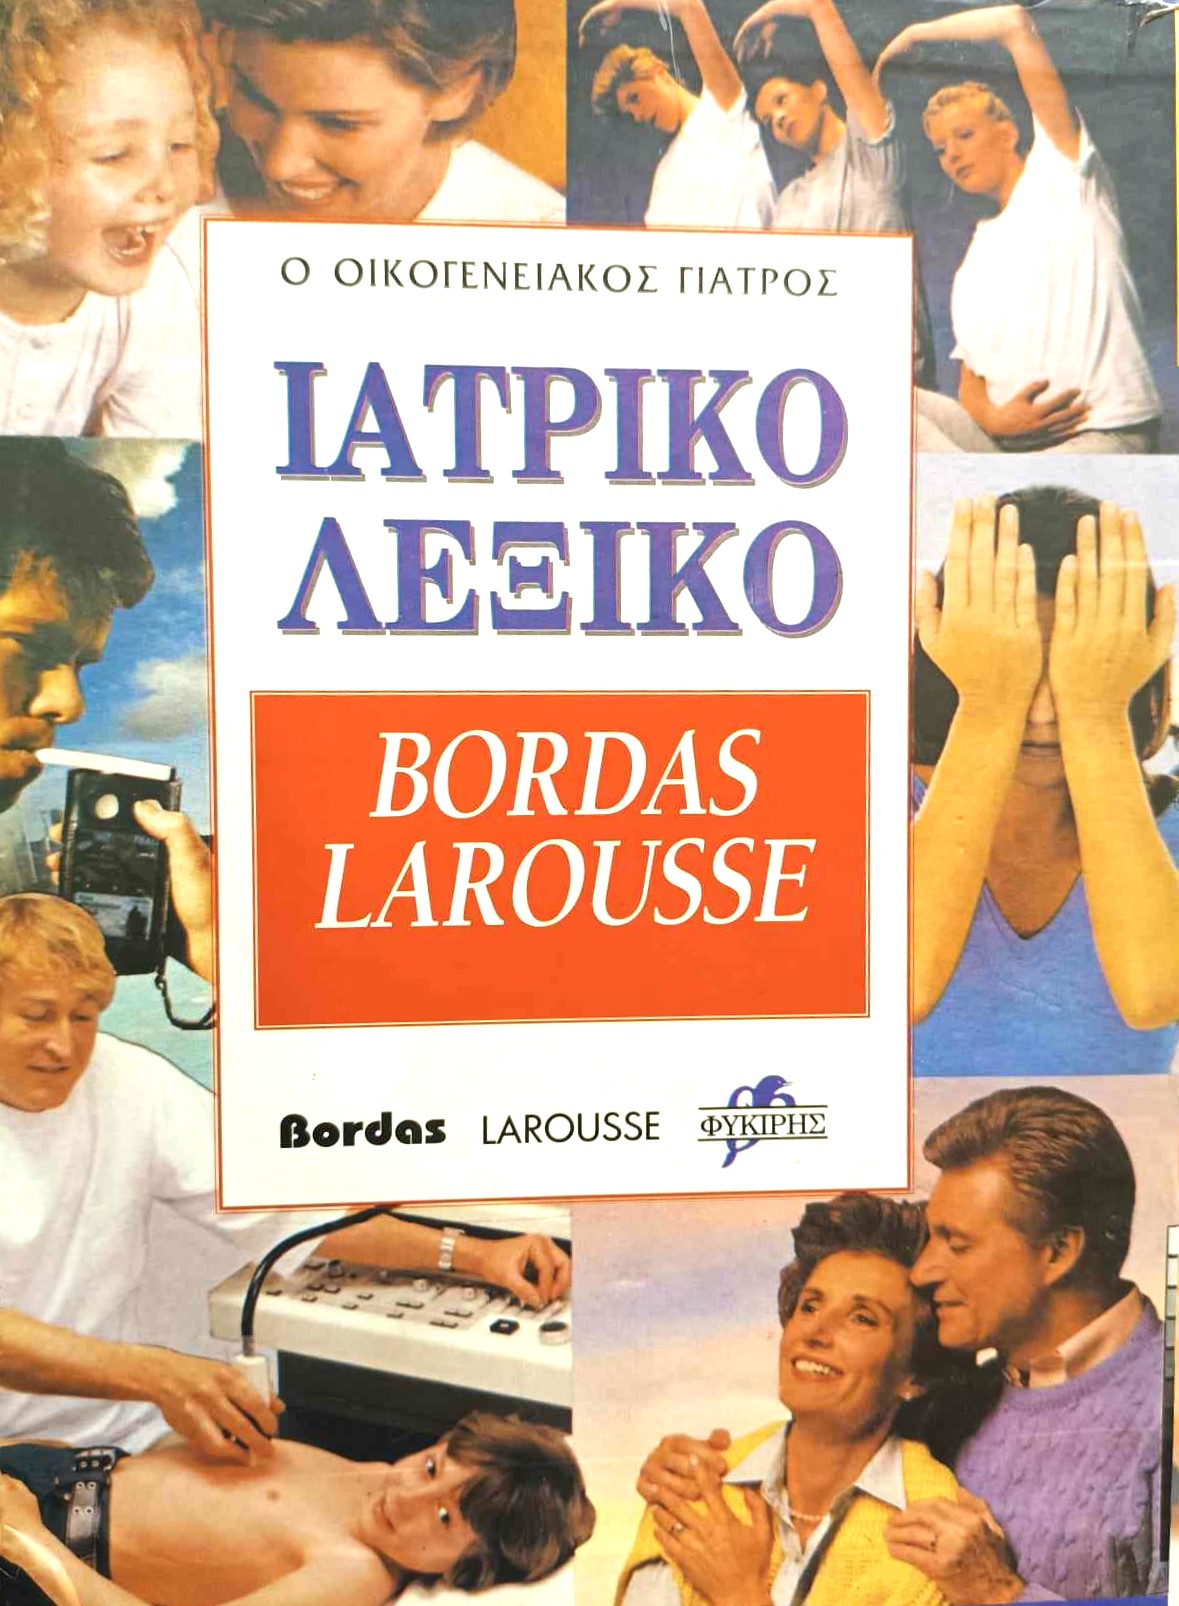 Ιατρικό λεξικό Bordas Larousse (Τόμοι ) (Παλαιοβιβλιοπωλείο)